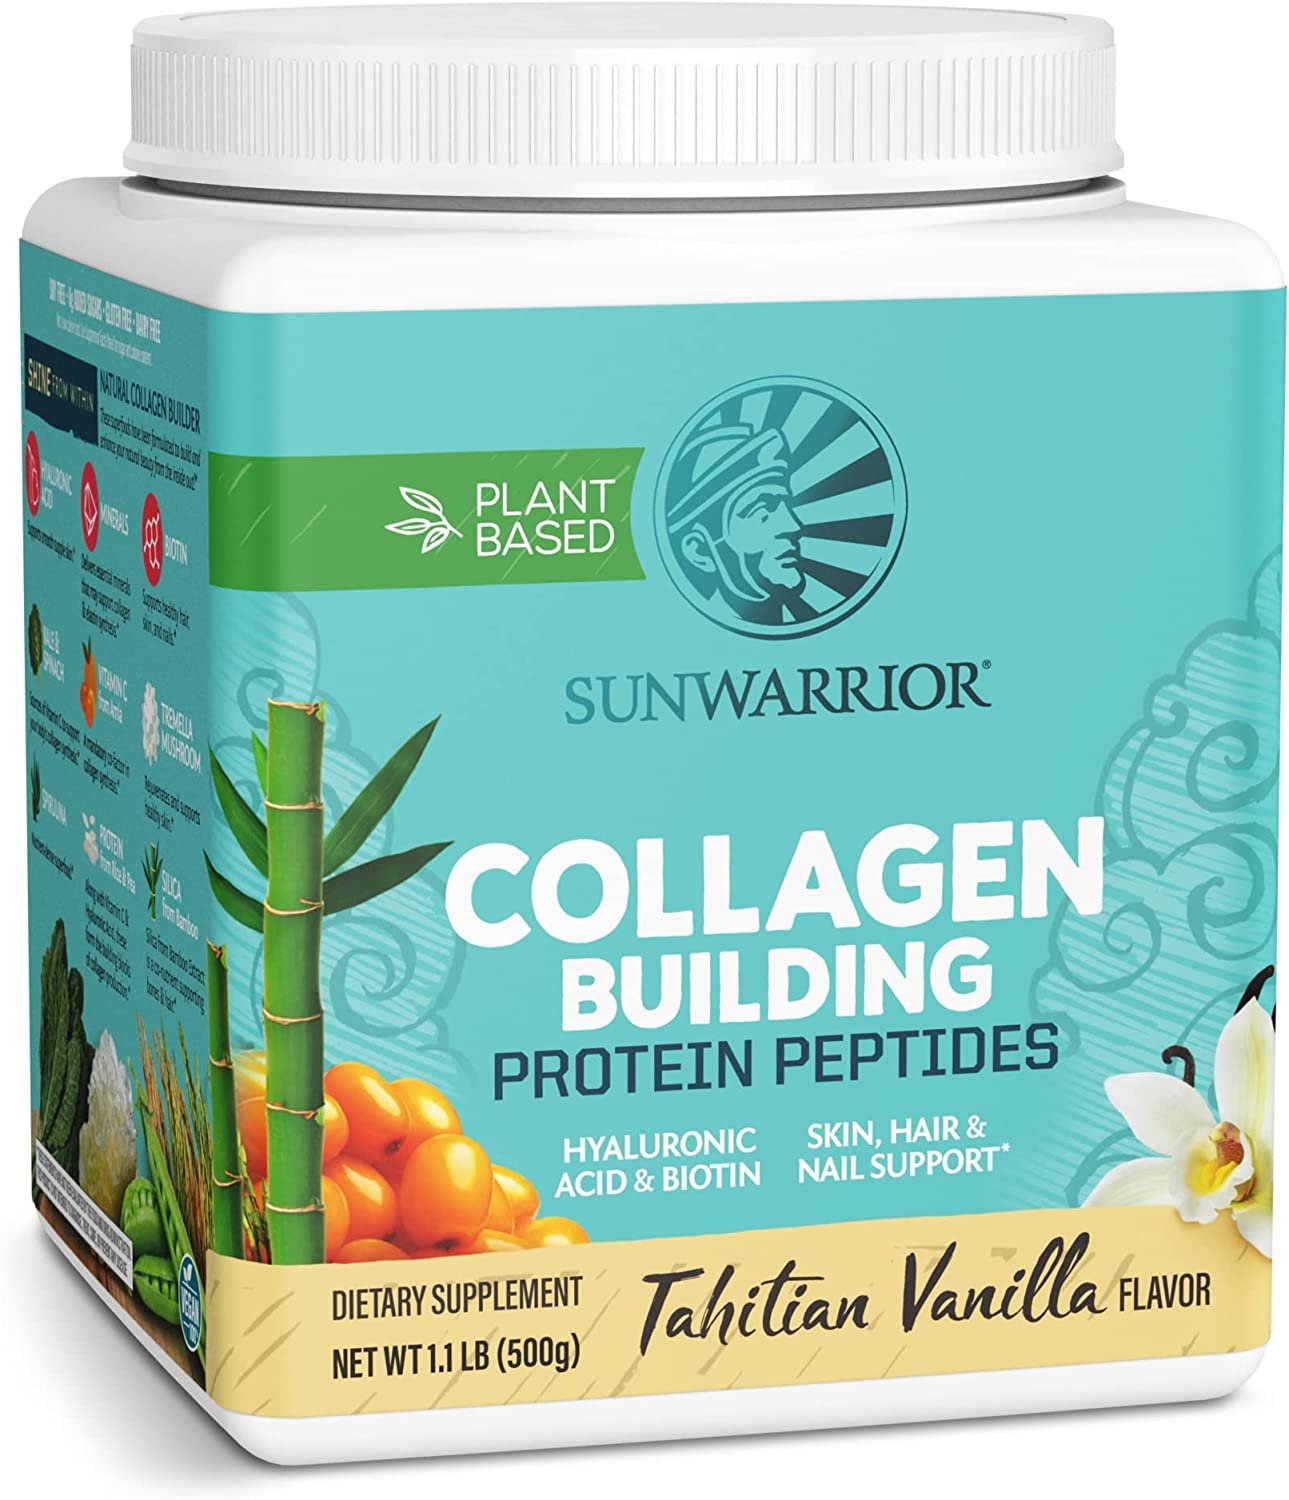 Sunwarrior Collagen Peptides Powder with Biotin Vitamin C Hyaluronic Acid Collagen Protein Powder for Hair Skin Nail Supplement Dairy Free Low Carb Gluten Free | Collagen Builder Protein Peptides